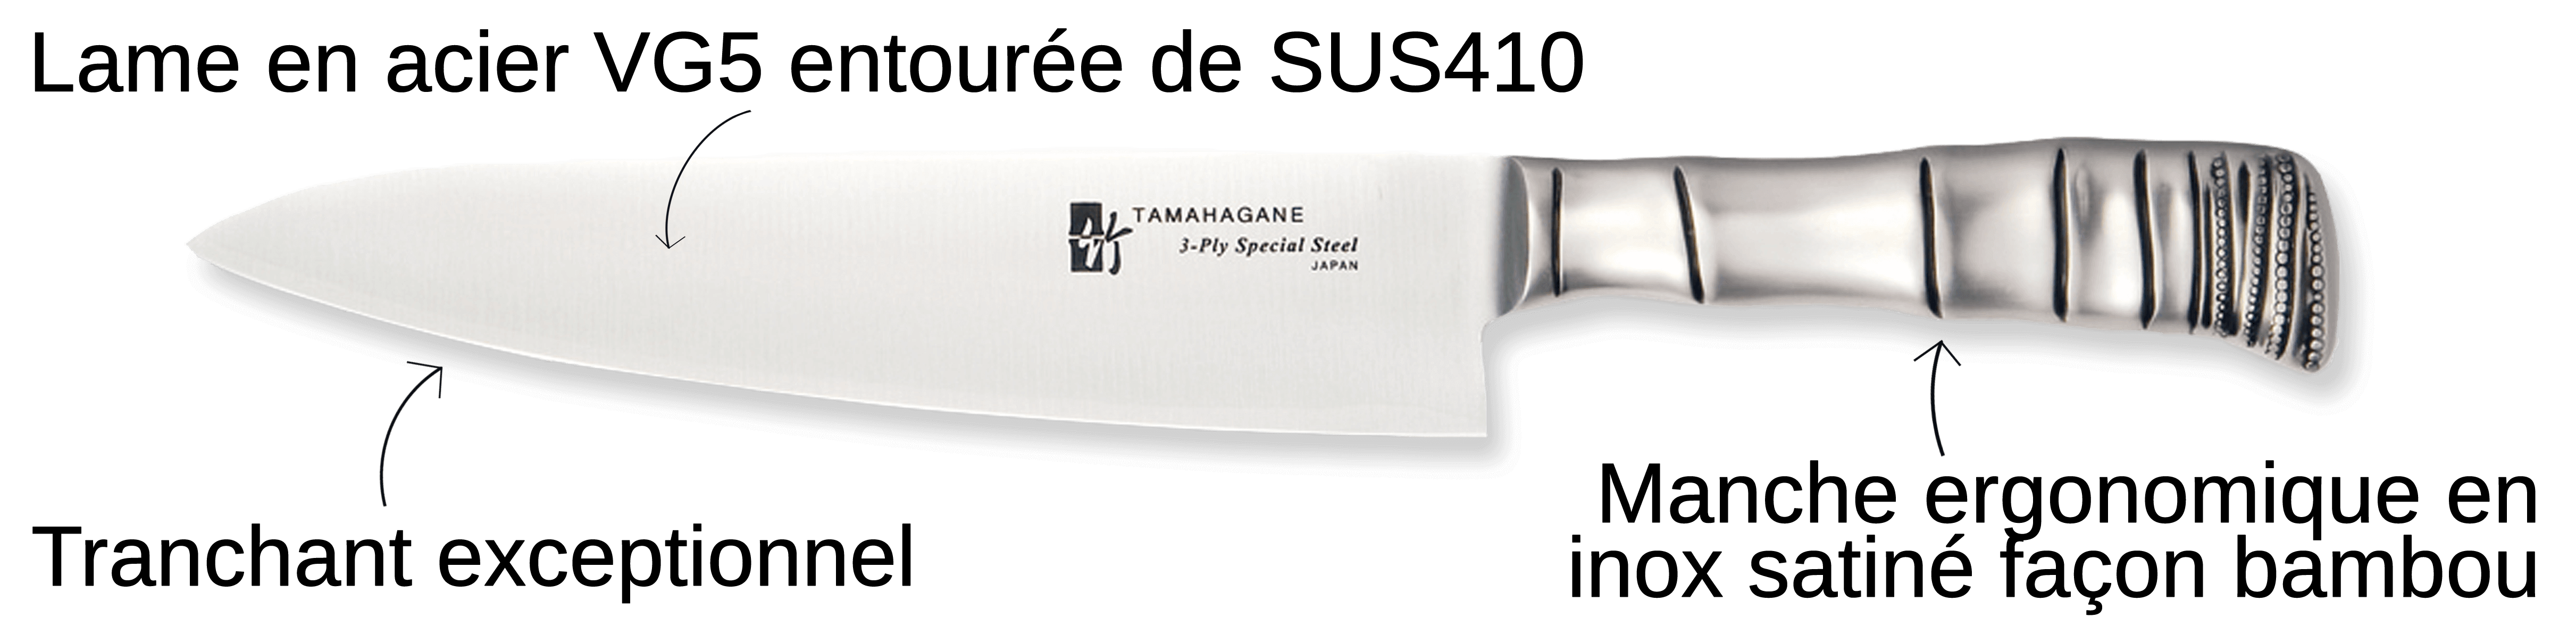 Découvrez le couteau Tamahagane Bamboo ici